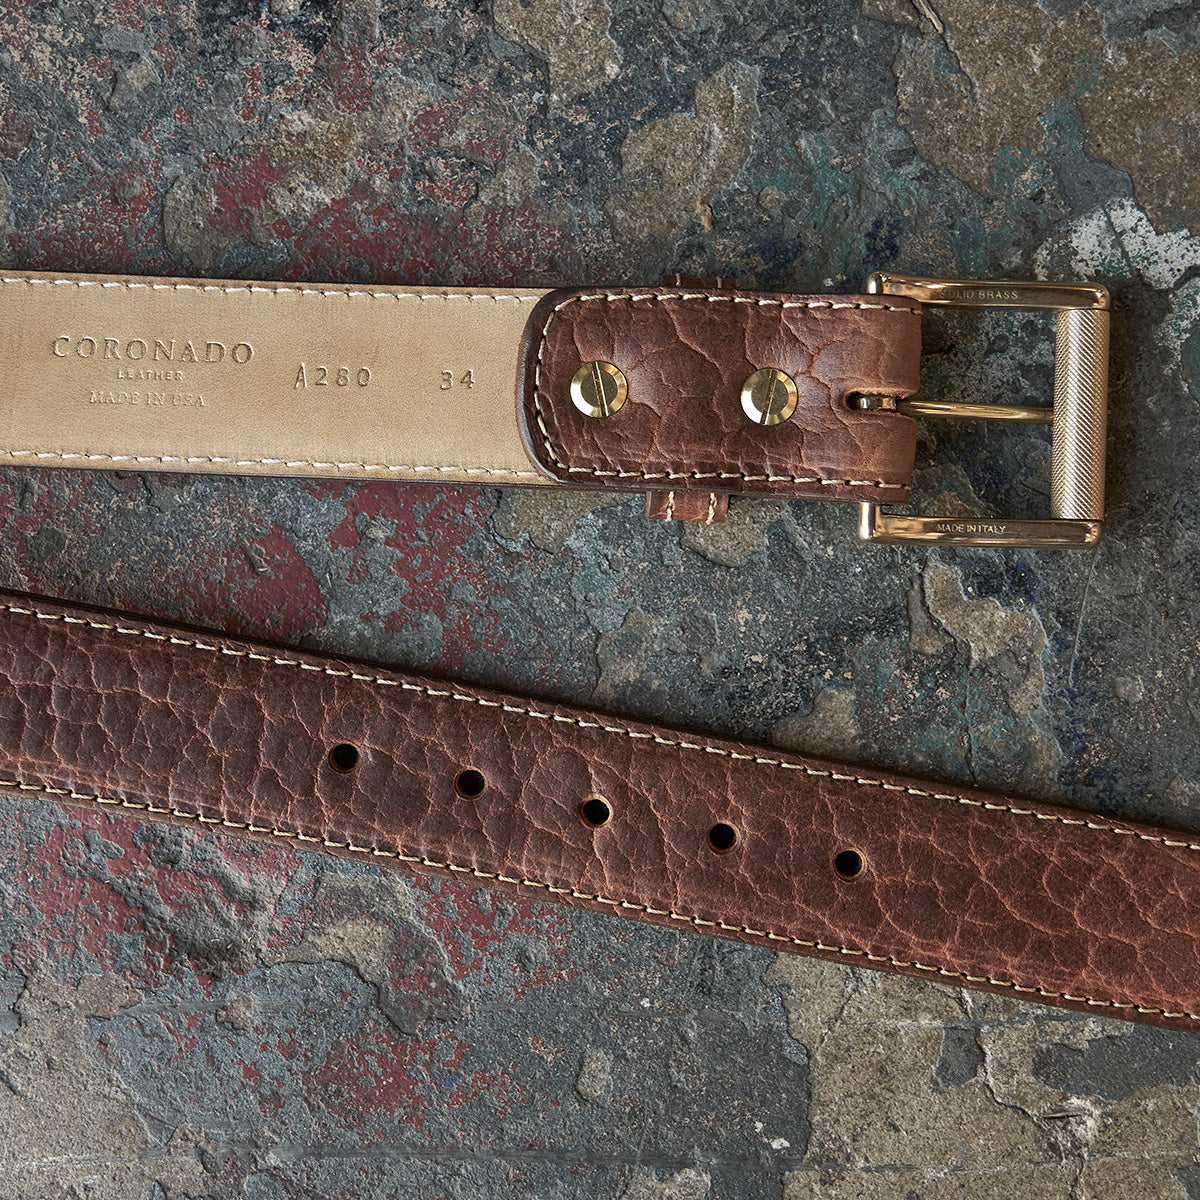 Shrunken Bison Leather Belt